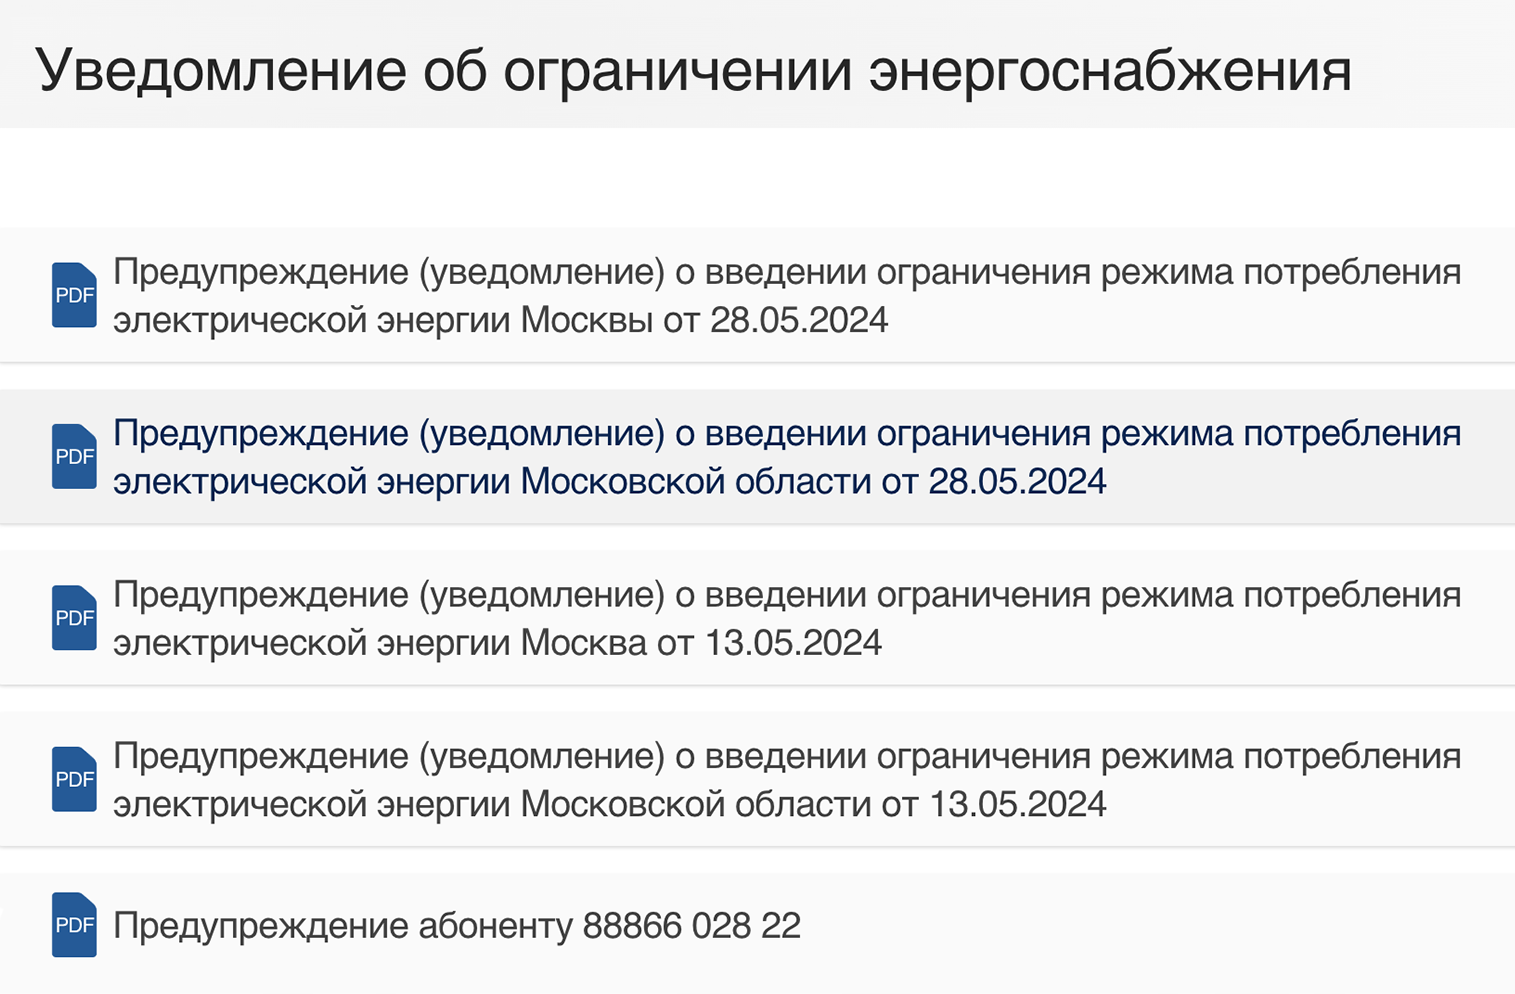 Информация о плановом ограничении энергоснабжения на сайте Мосэнергосбыта. Источник: mosenergosbyt.ru